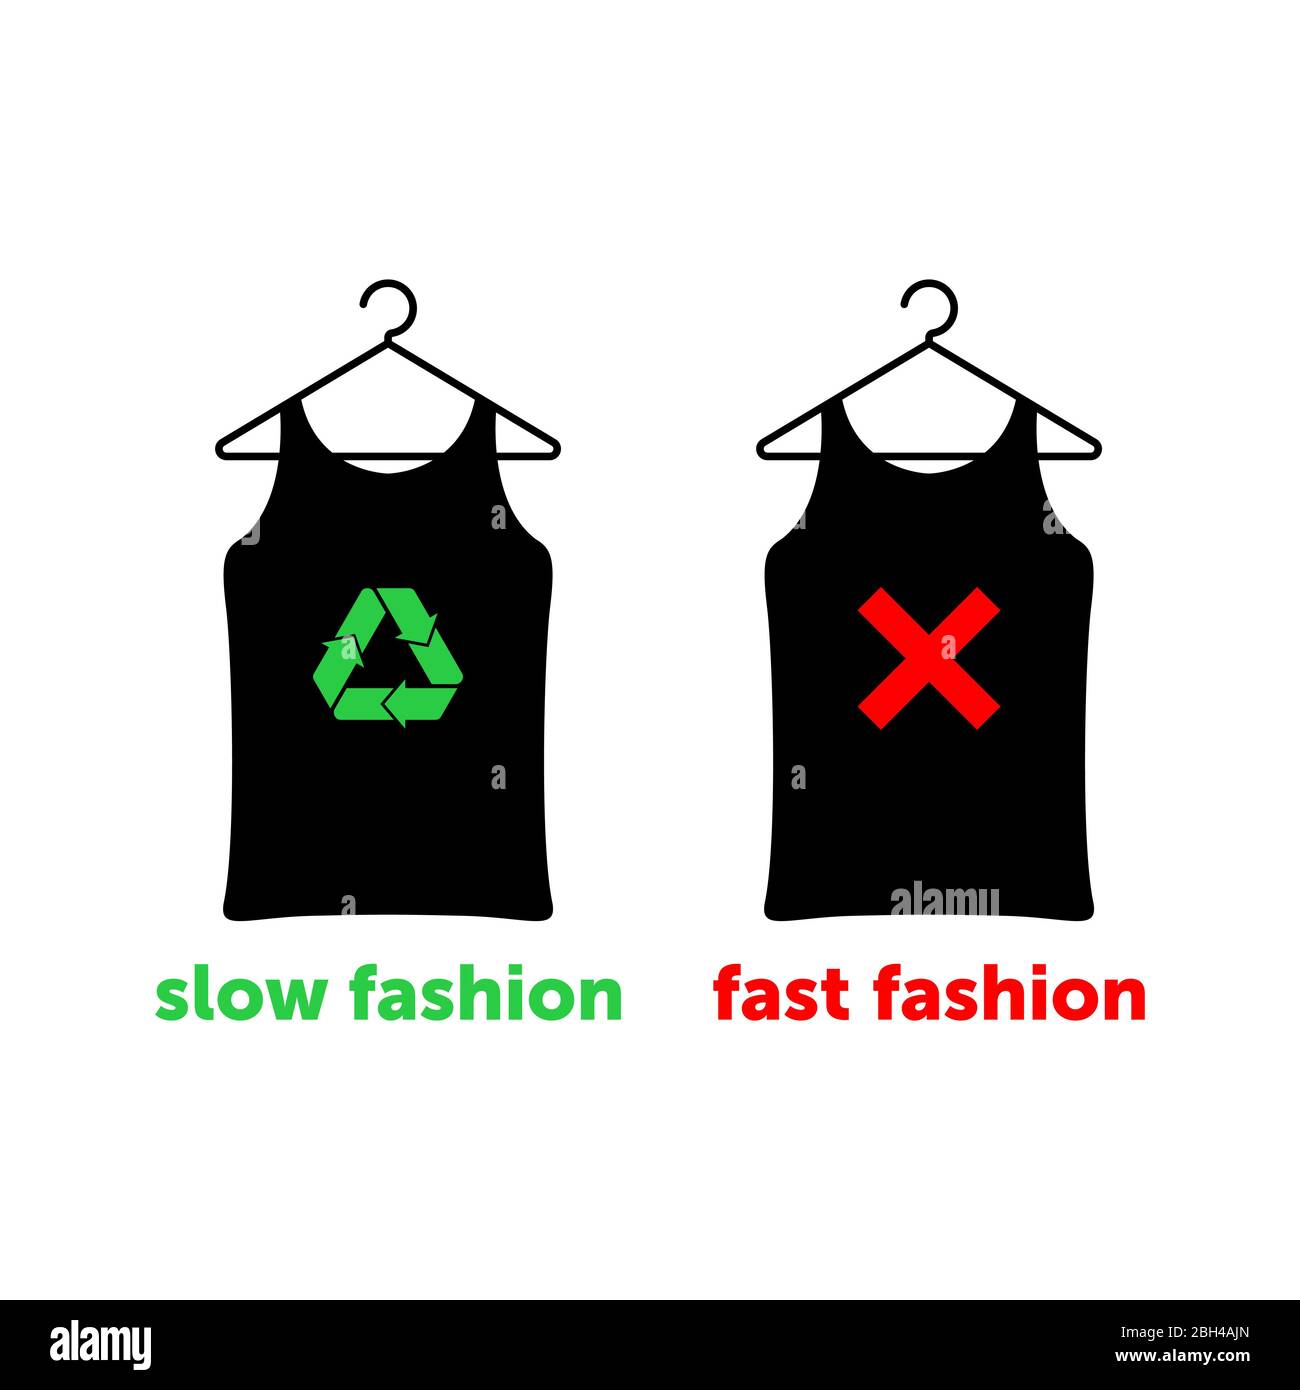 La mode lente est le bon choix pour sauver la terre. Deux tee-shirts sur les cintres avec croix rouge et signe vert de recyclage. Illustration vectorielle. Illustration de Vecteur